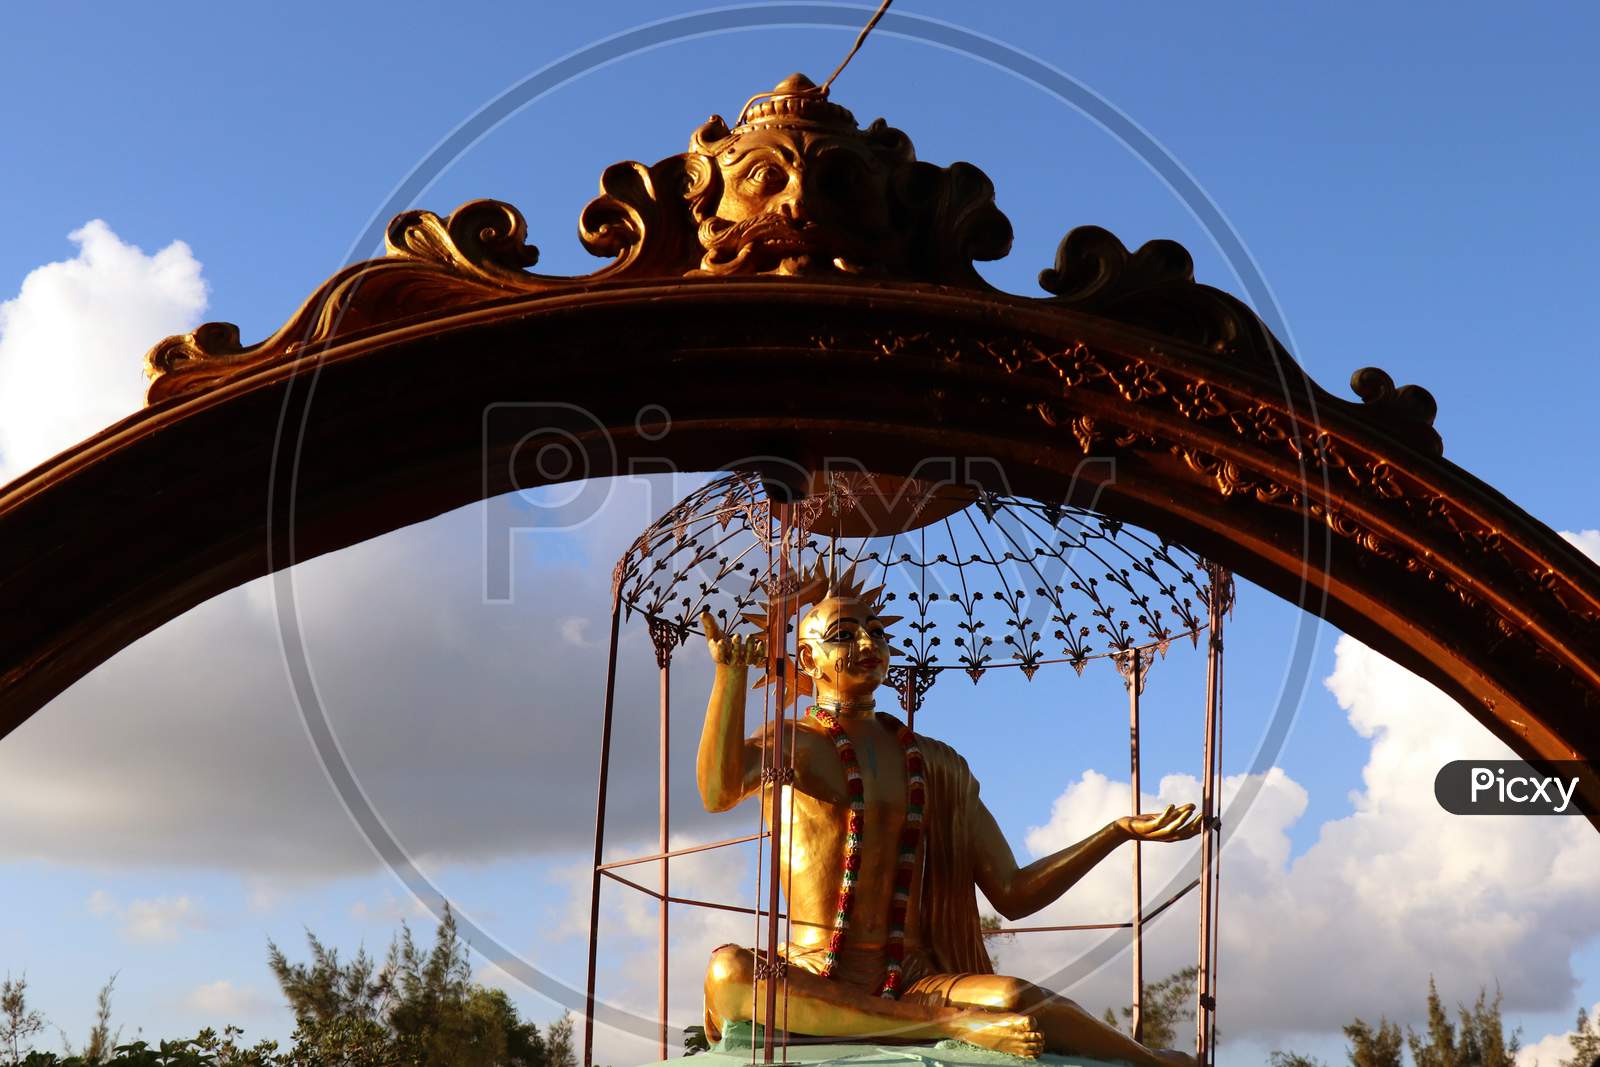 Sri Chaitanya statue at Gupta Vrindavan in Puri, Odisha, India